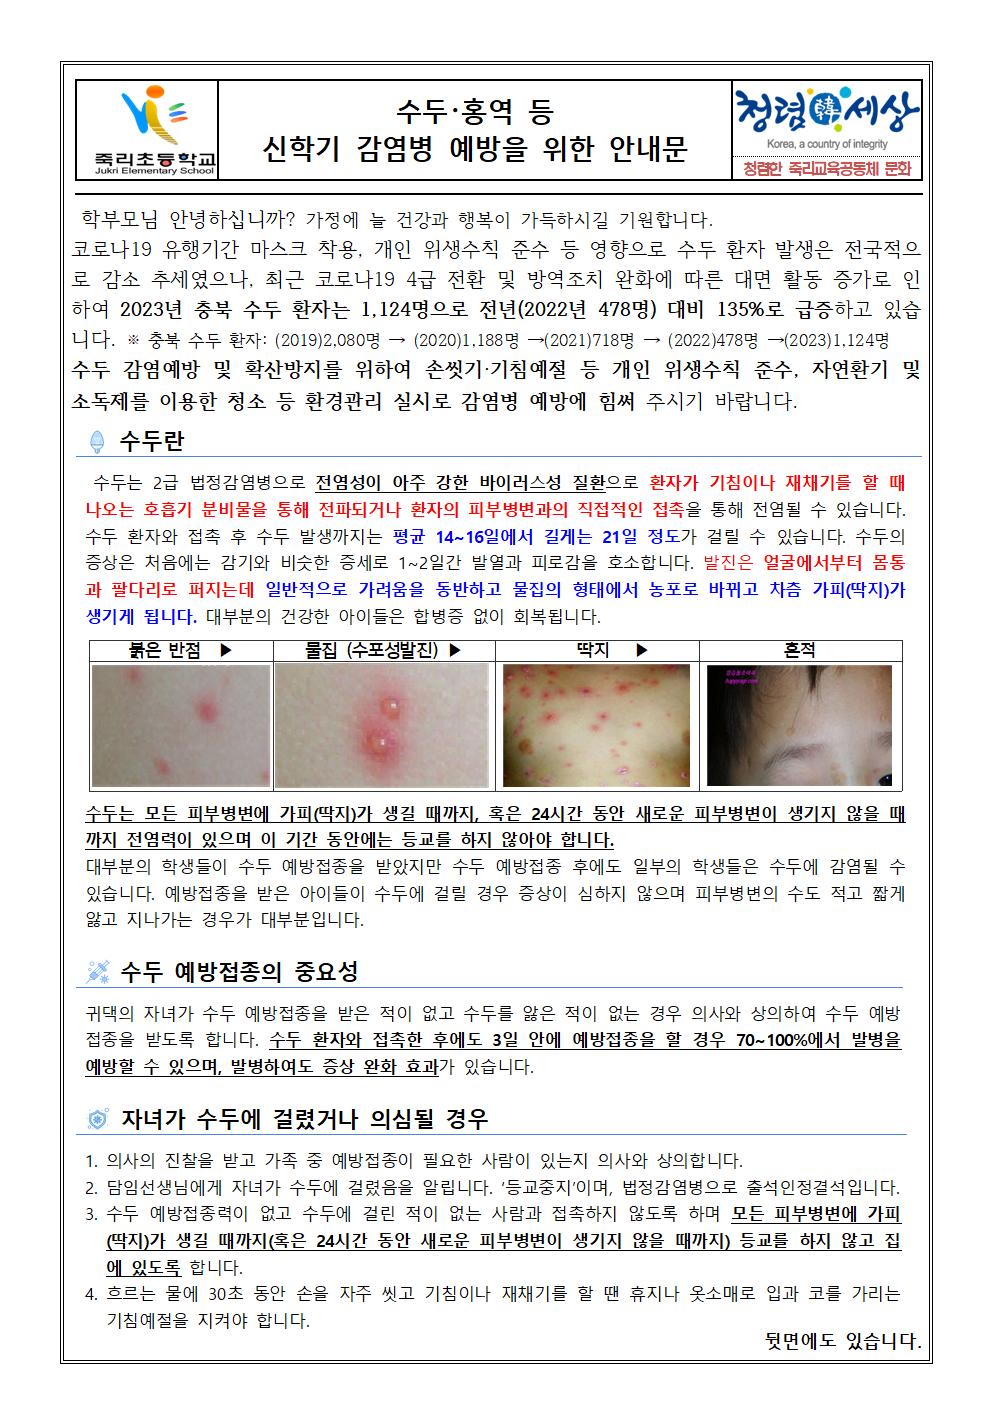 수두 홍역 등 신학기 감염병 예방을 위한 안내문001